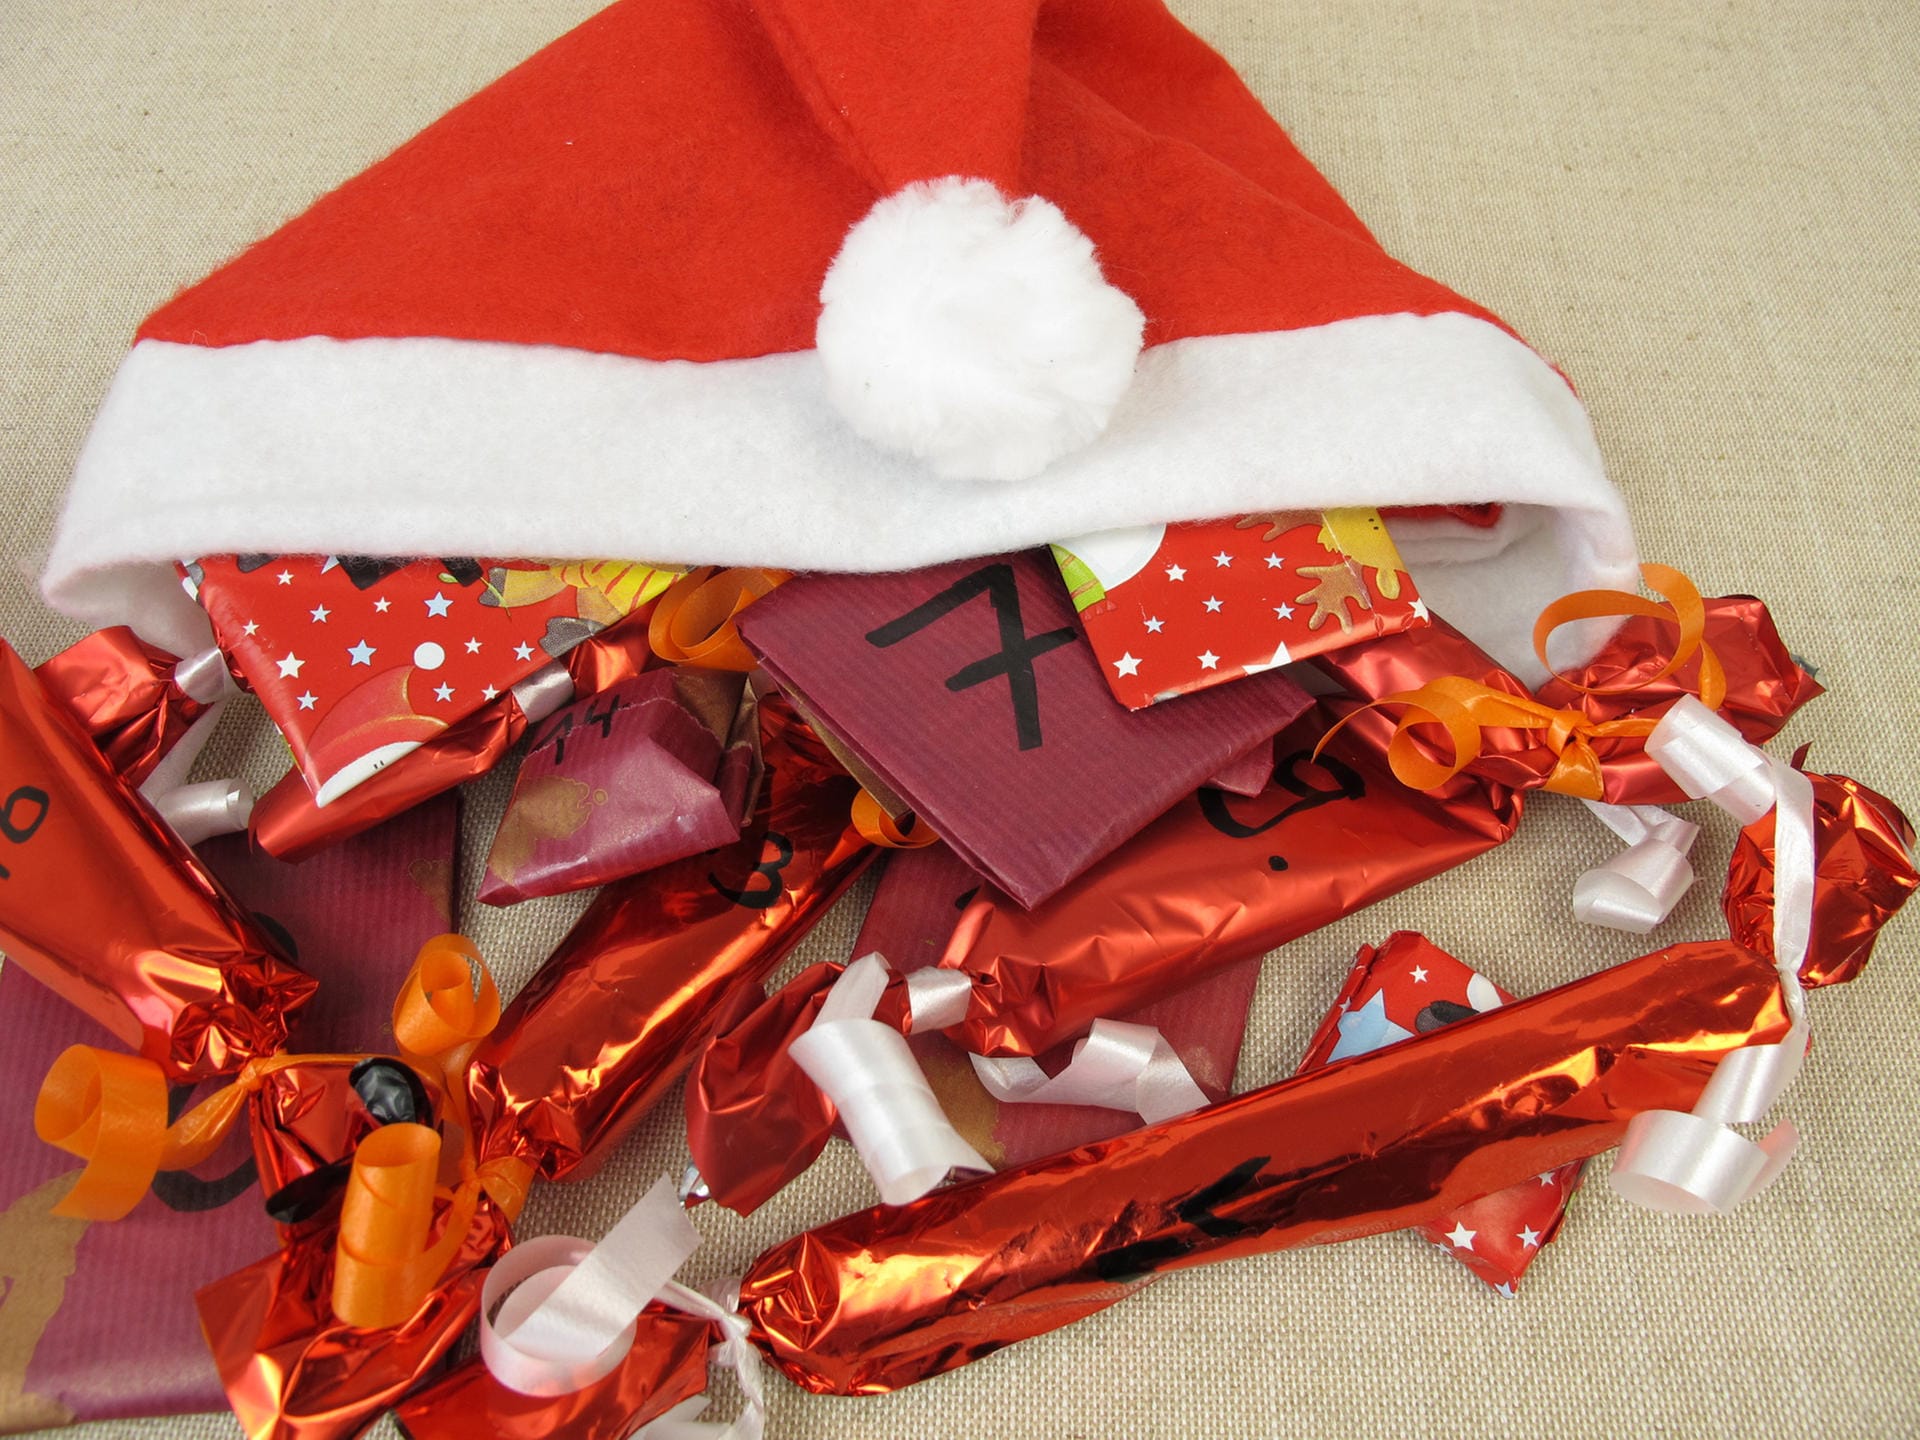 Weihnachtsmütze mit Geschenken: Wer besonders kleine Geschenke in seinen Adventskalender legt, kann auch eine Mütze oder einen kleinen Weihnachtssack zum Aufbewahren der "Türchen" nutzen.